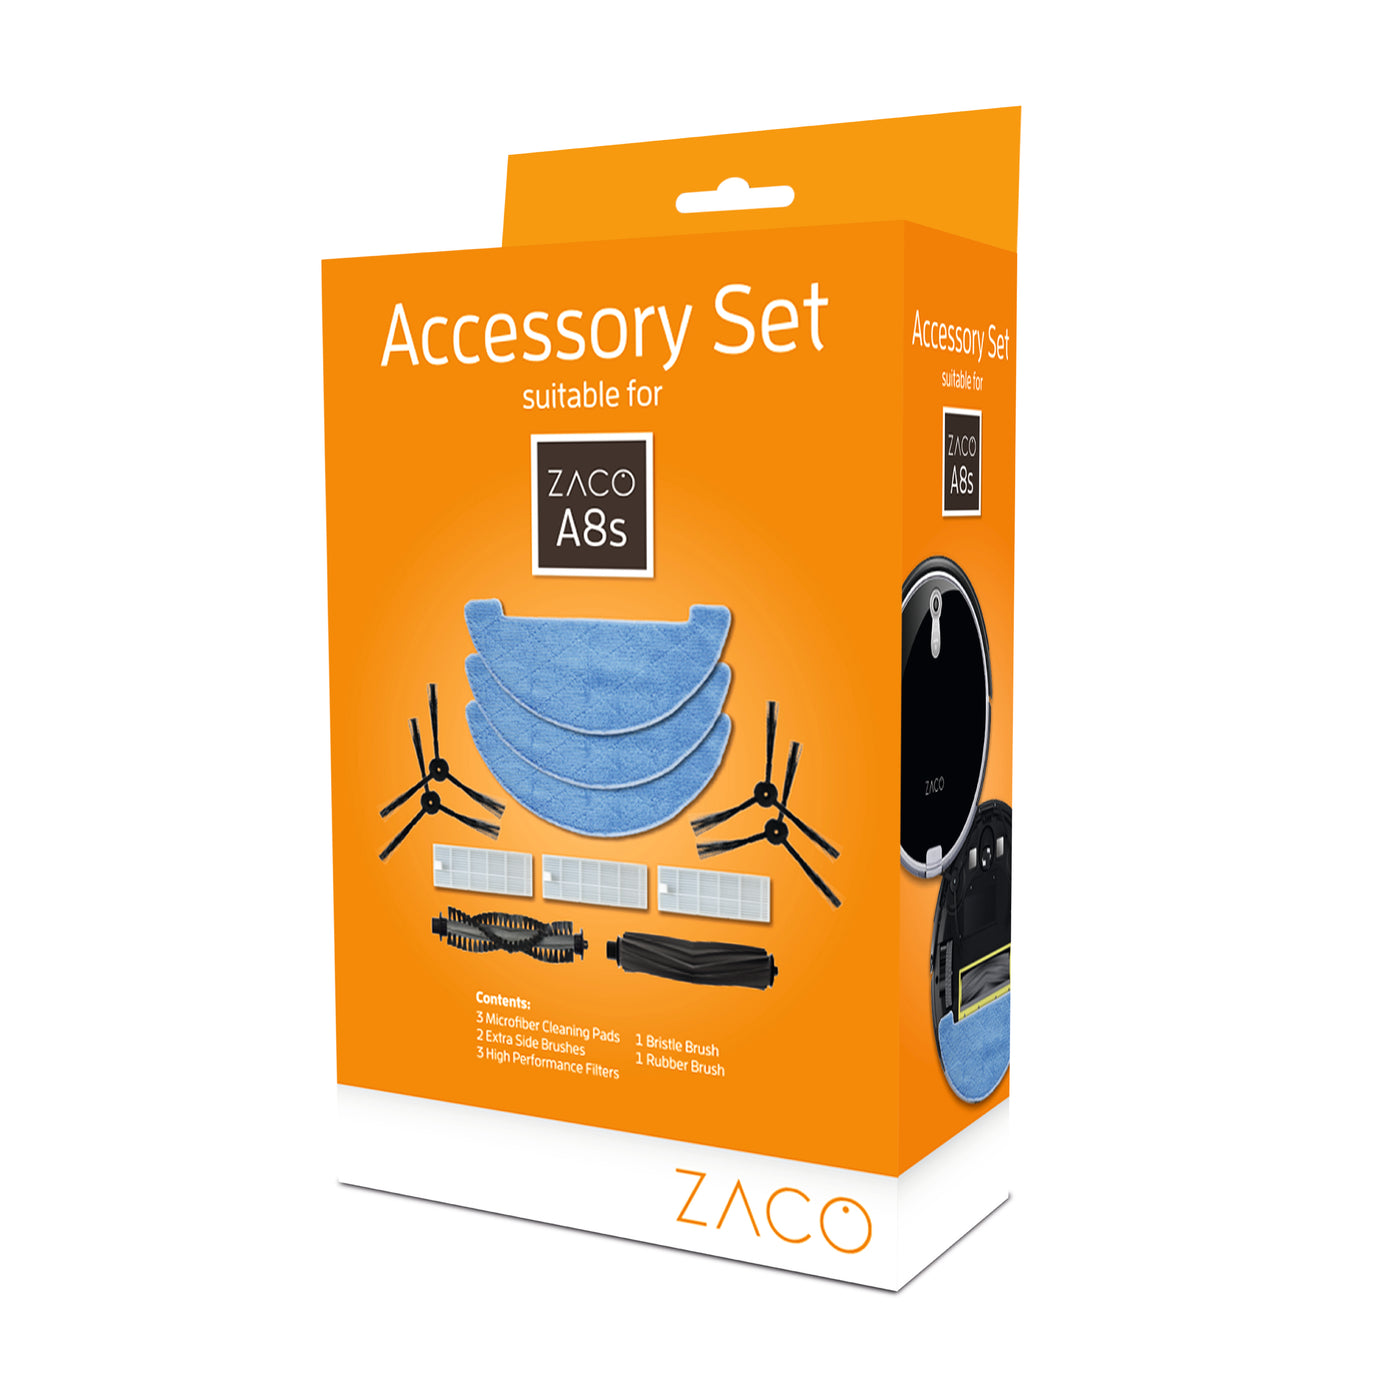 Accessory set for ZACO A8s